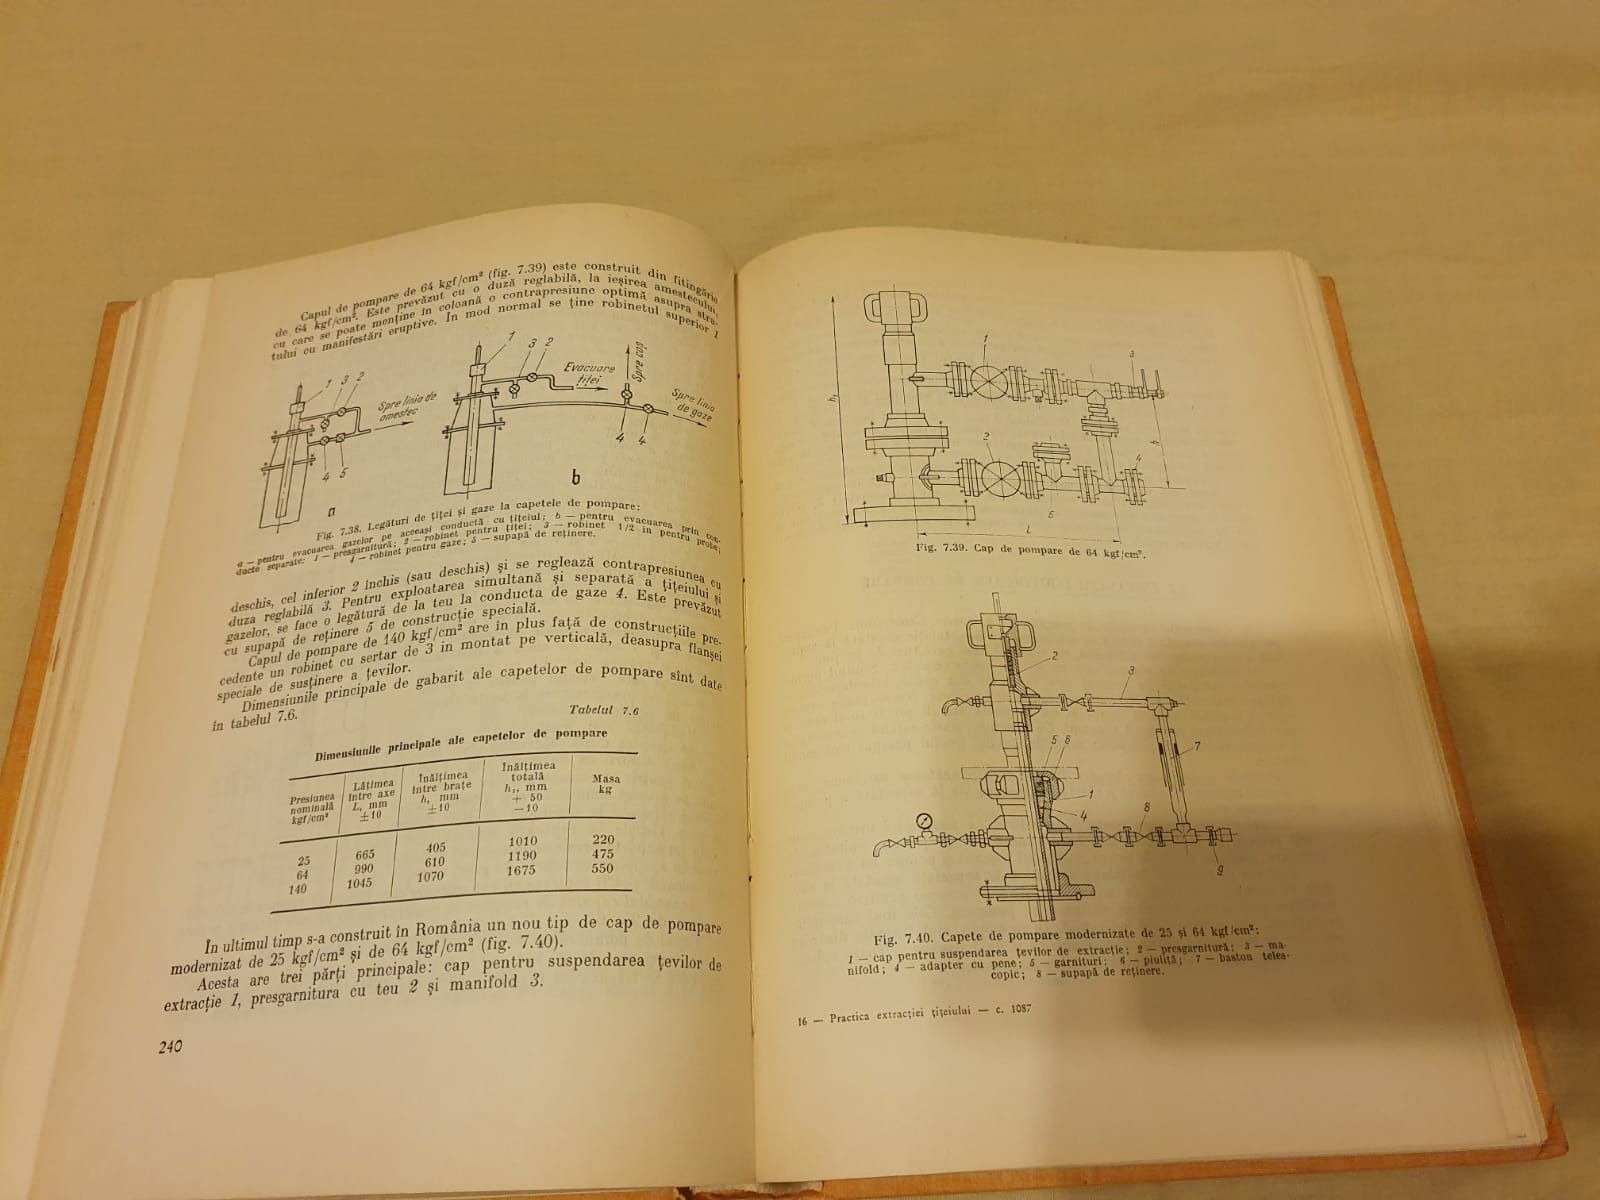 Practica extracției țițeiului, V. Anastasiu, A. Purcel, ed. Tehnica'71